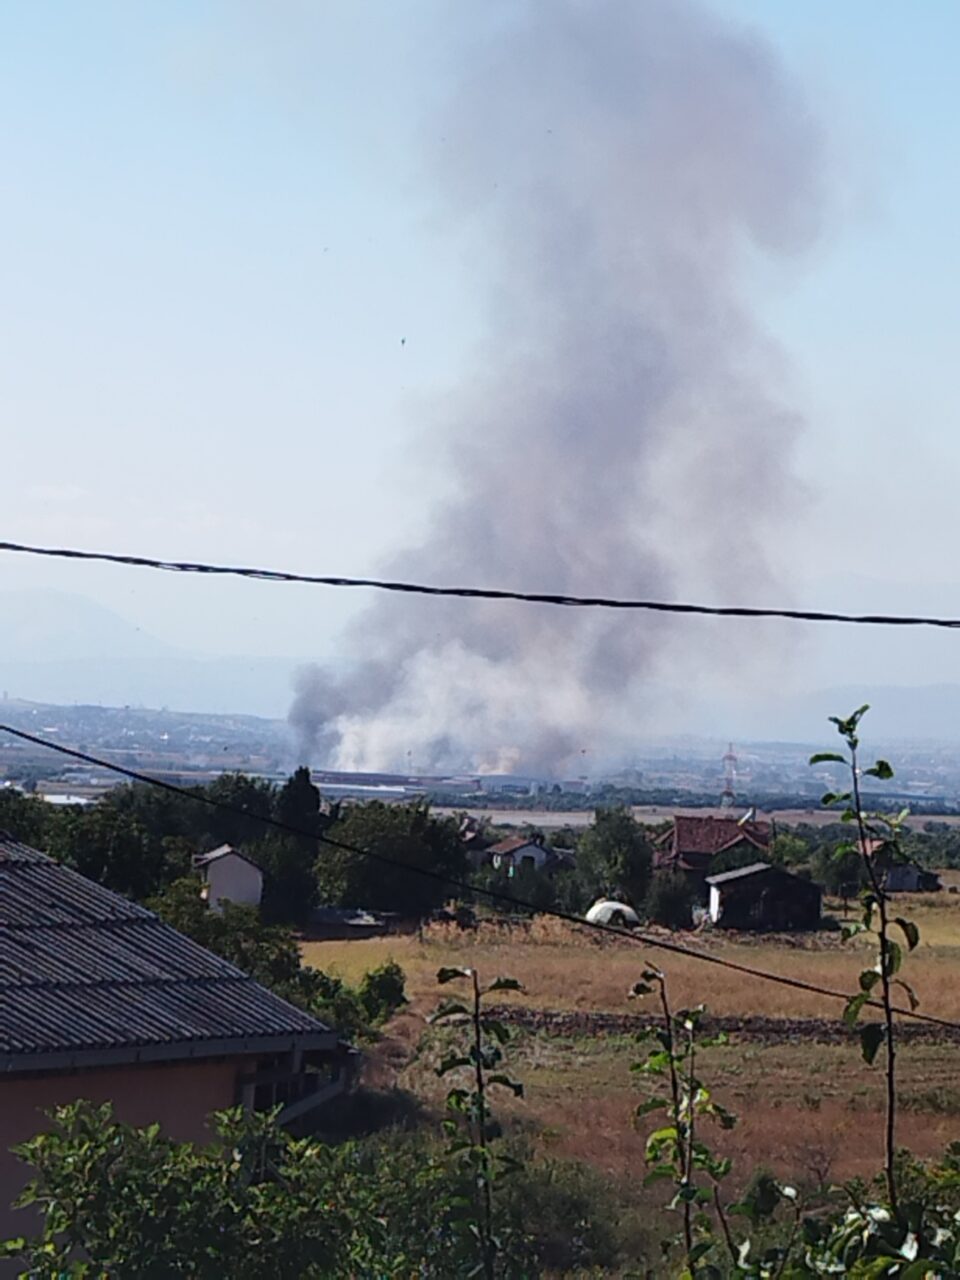 Чадот и пепелта над Скопје доаѓаат од запаленото ѓубре кај Арачиново